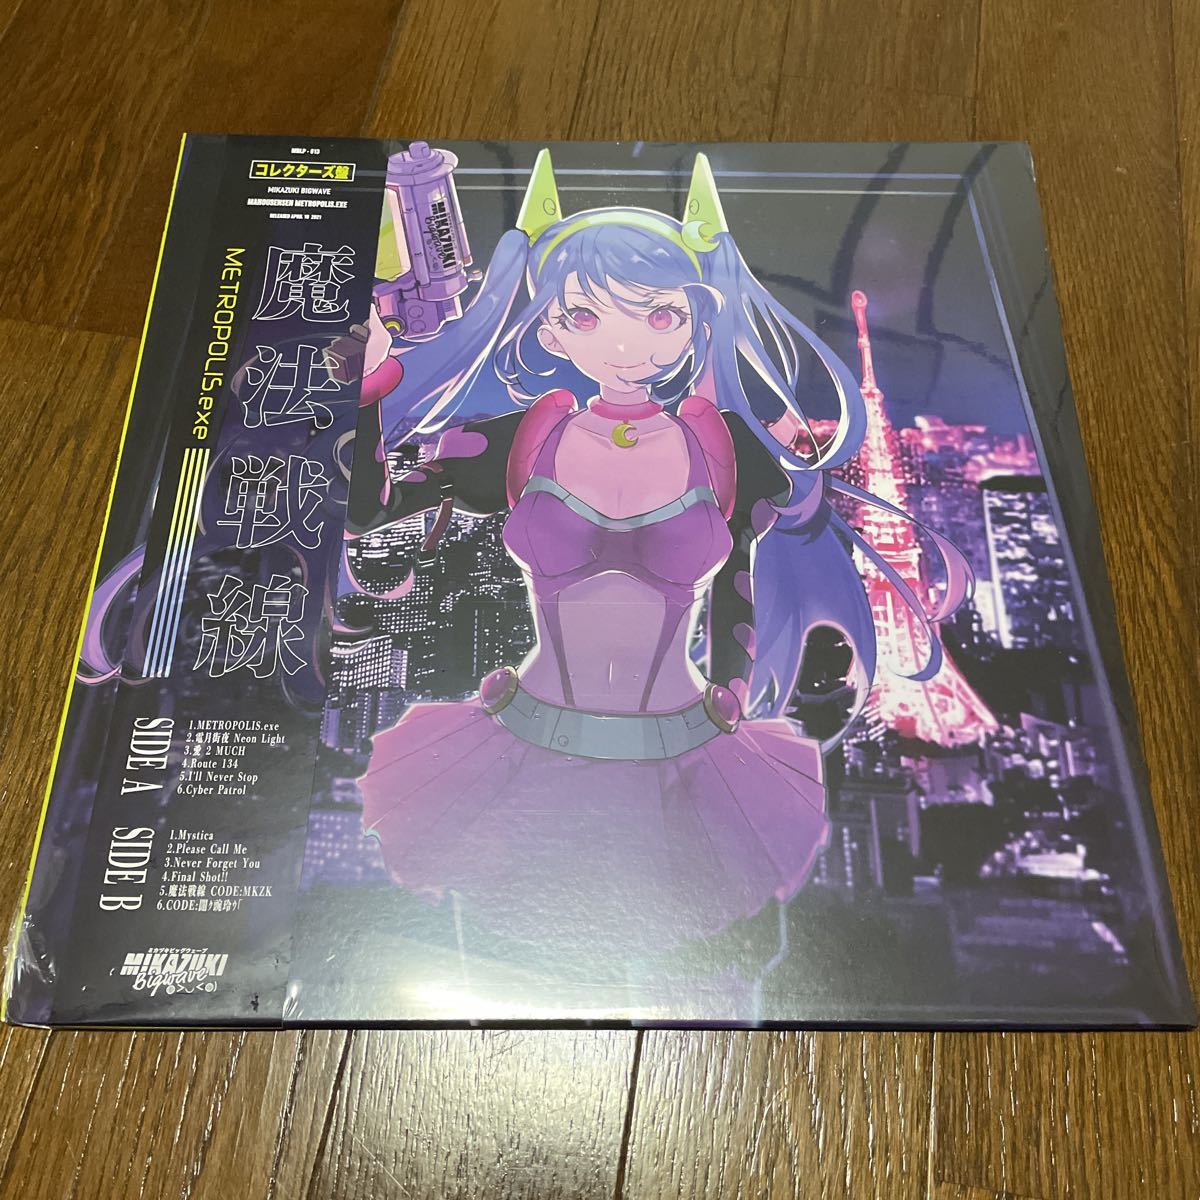 ミカヅキBIGWAVE 魔法戦線 コレクターズ ピクチャー盤 / レコード